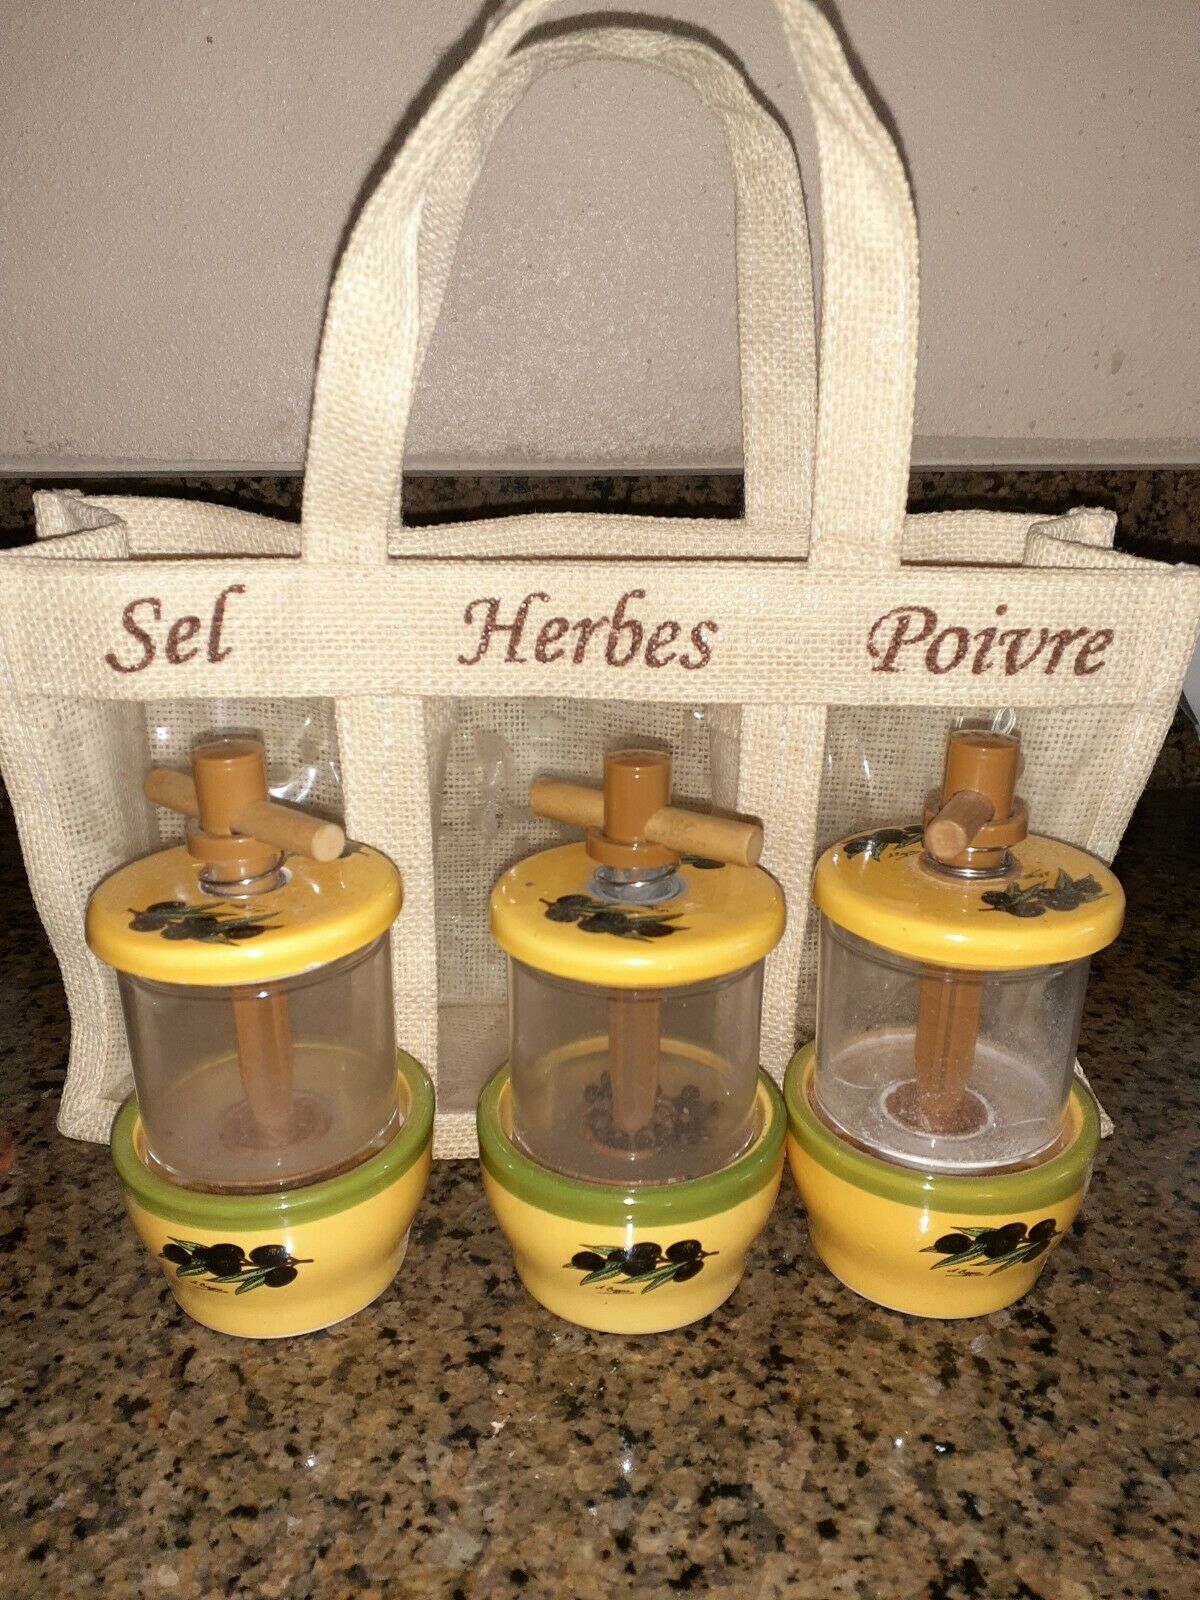 French Sel Herbes Poivre Herbal Grinder Set Olive Design Ceramic & Plastic